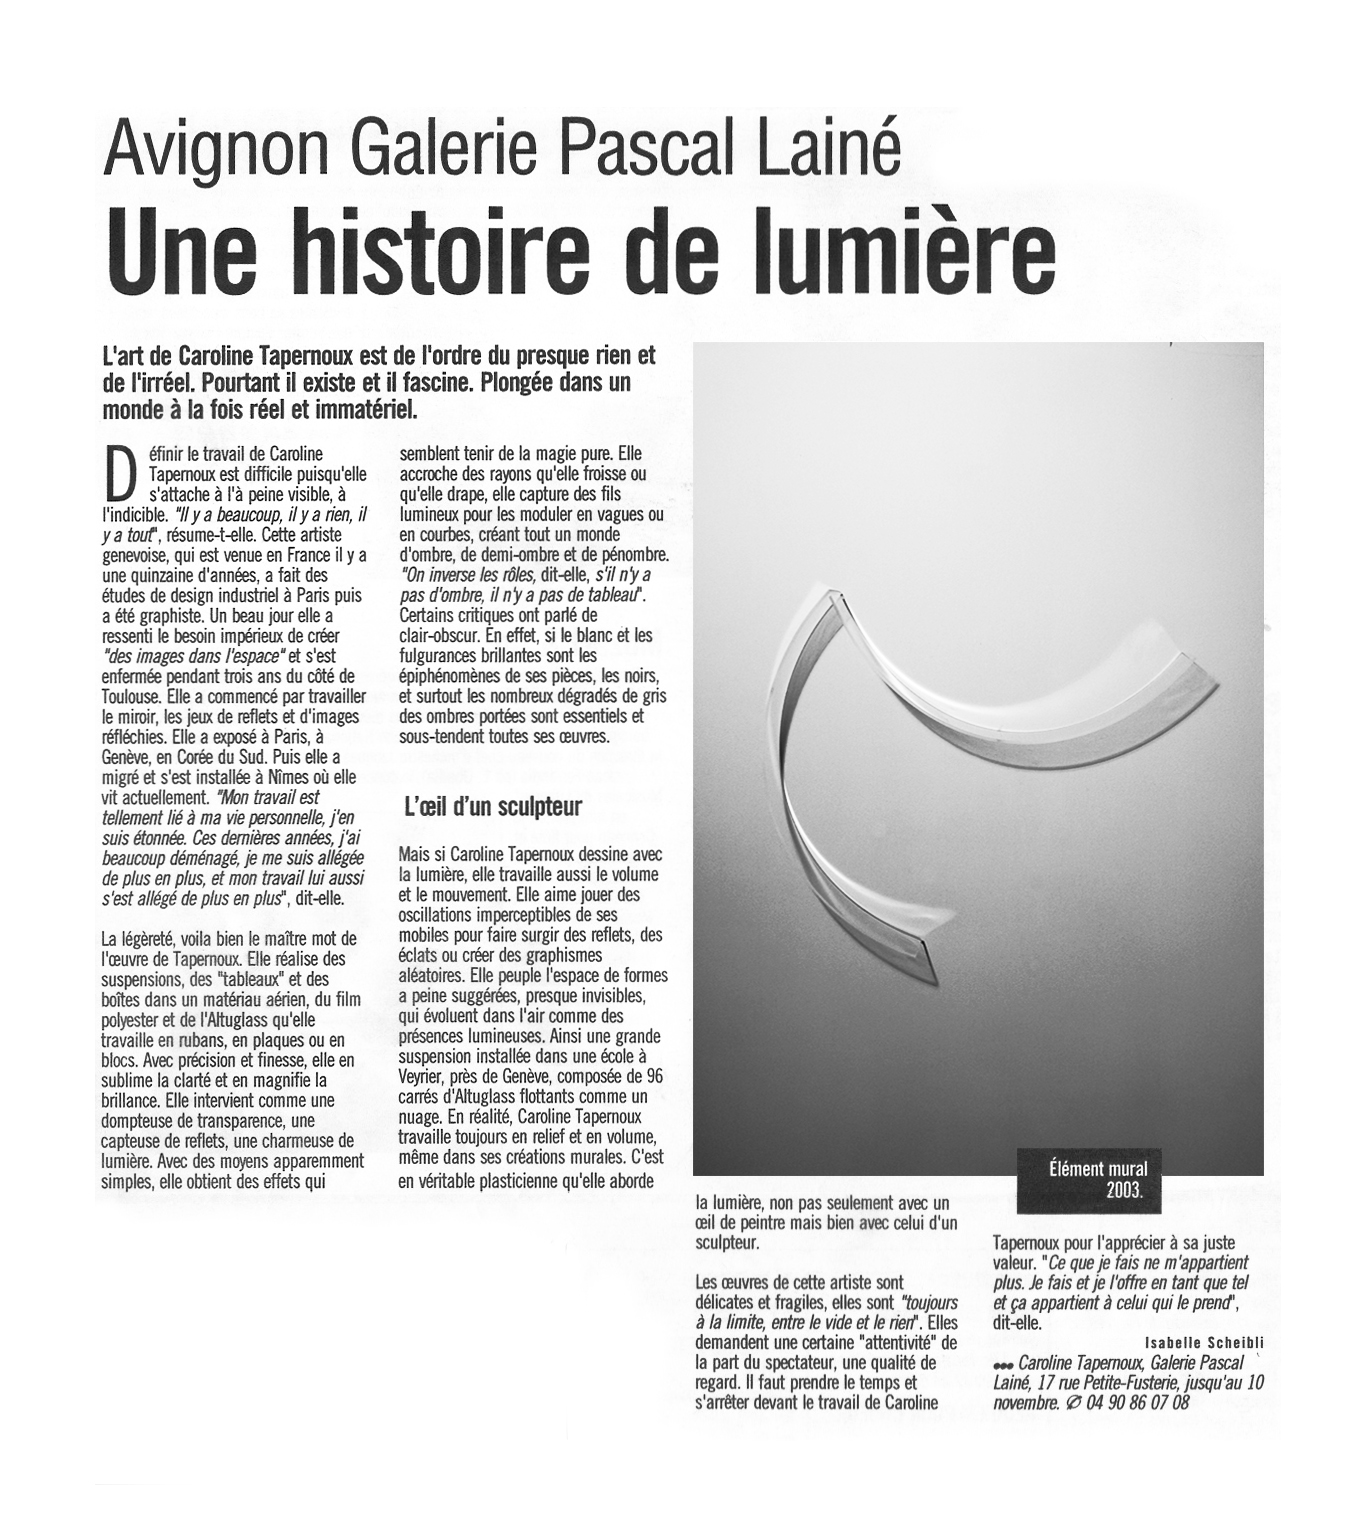 Galerie Pascal Lainé (Presse)